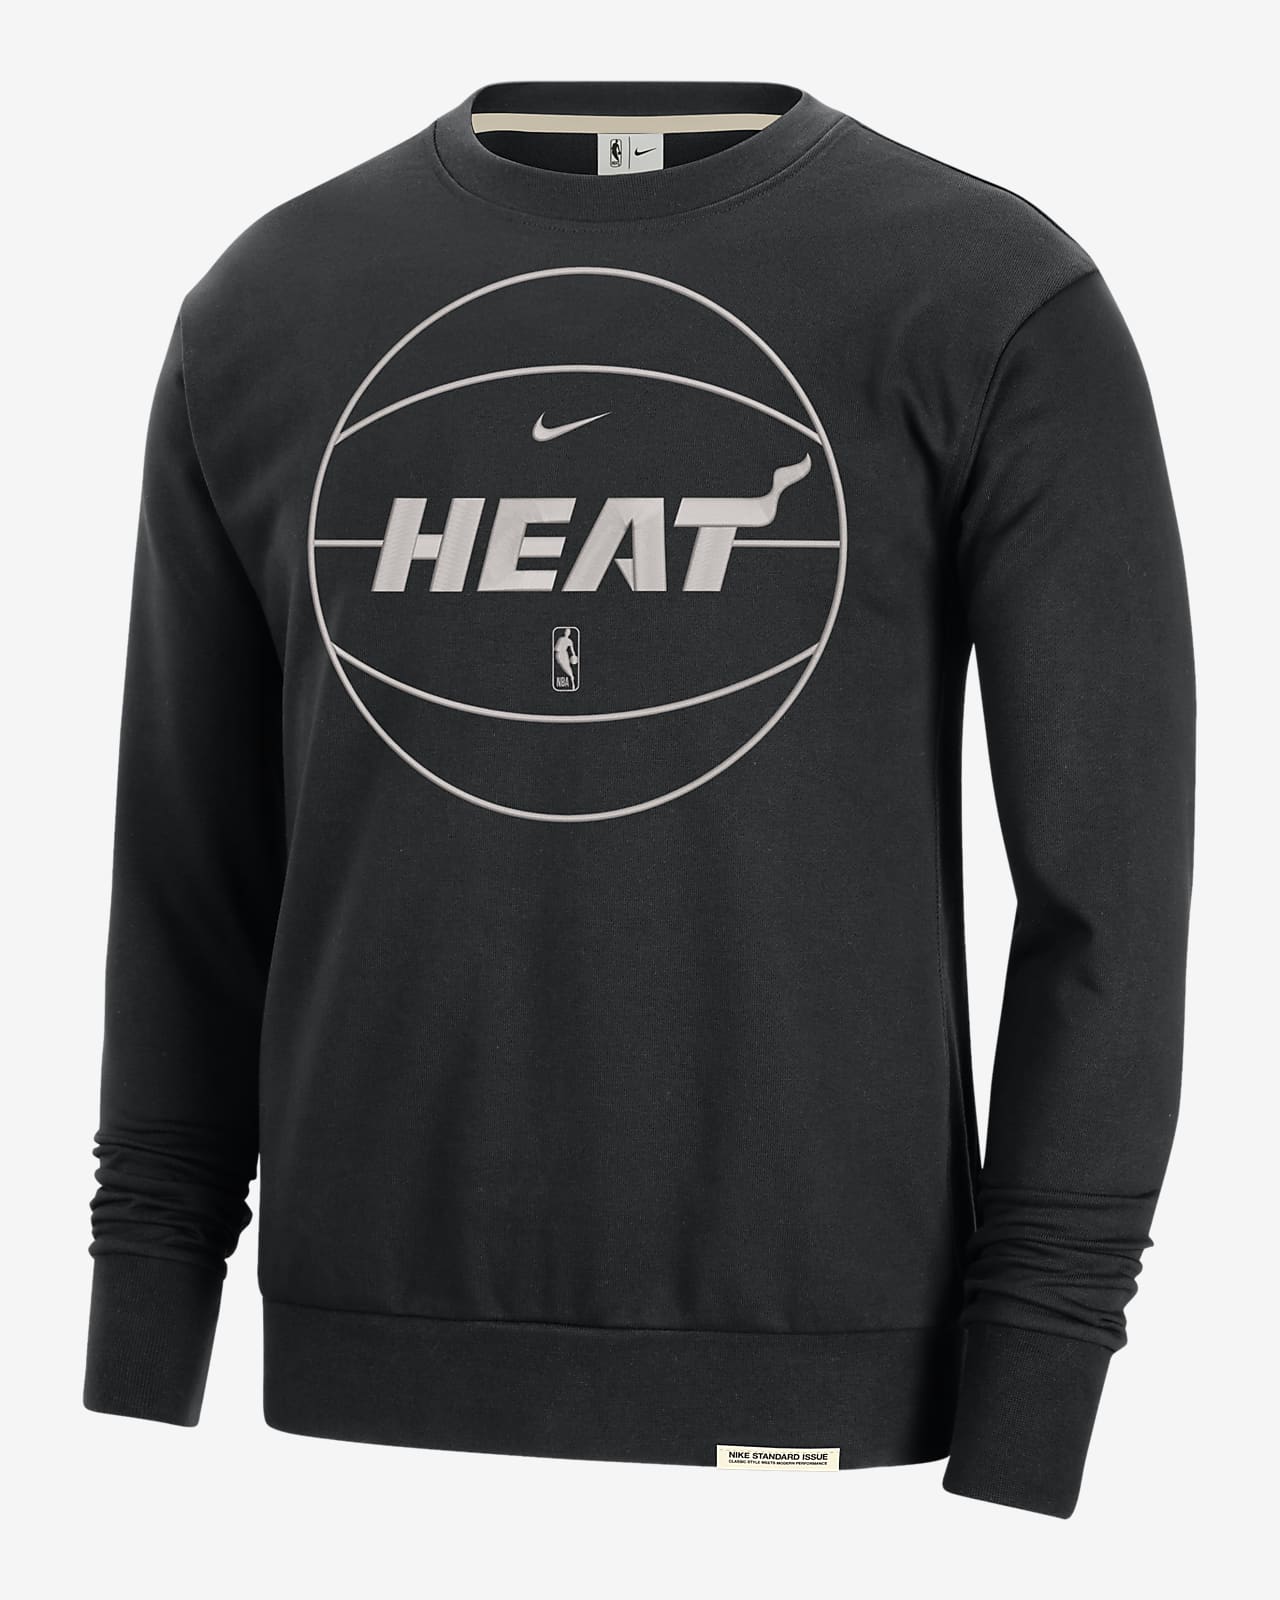 Miami Heat Standard Issue Men's Nike Dri-FIT NBA Sweatshirt